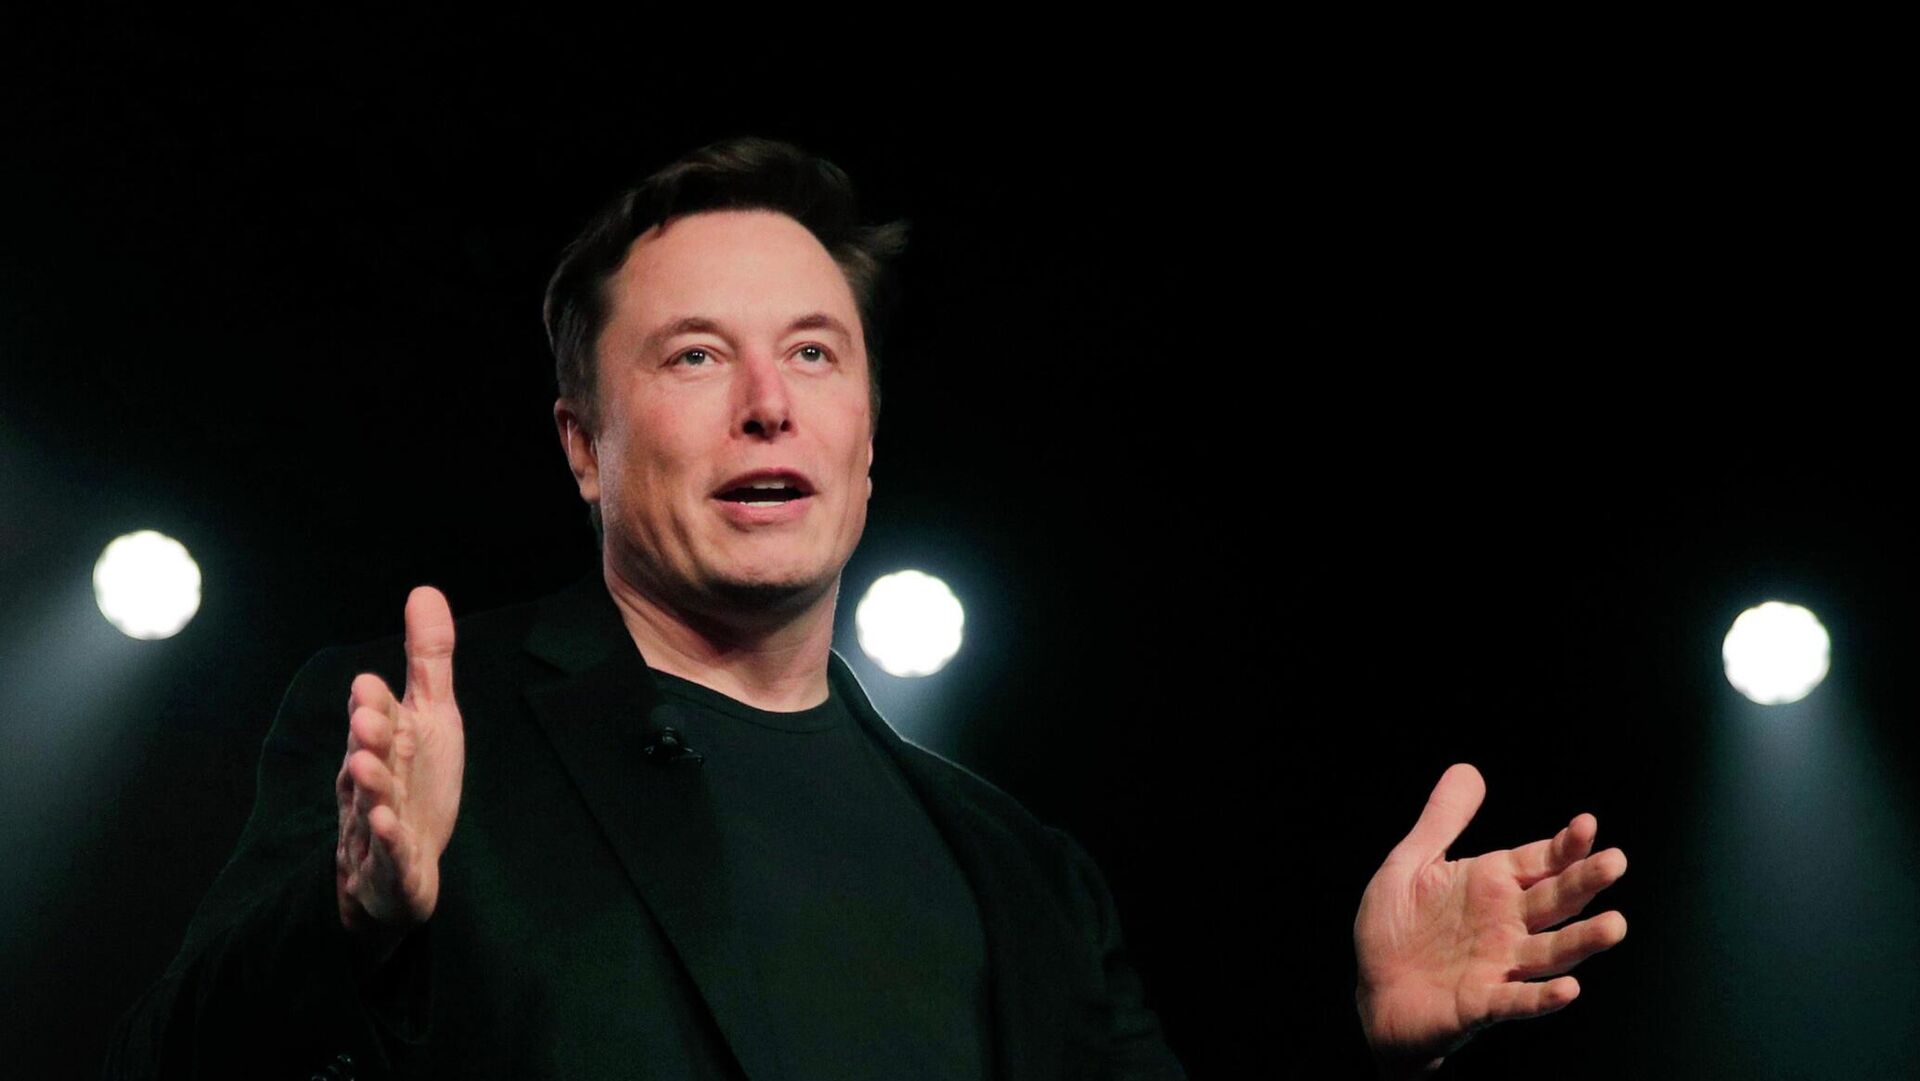 Semanas atrás, Musk había firmado una carta en la que pedía “detener el avance del desarrollo de IA hasta que estemos seguros que sus efectos serán positivos y sus riesgos manejables”.